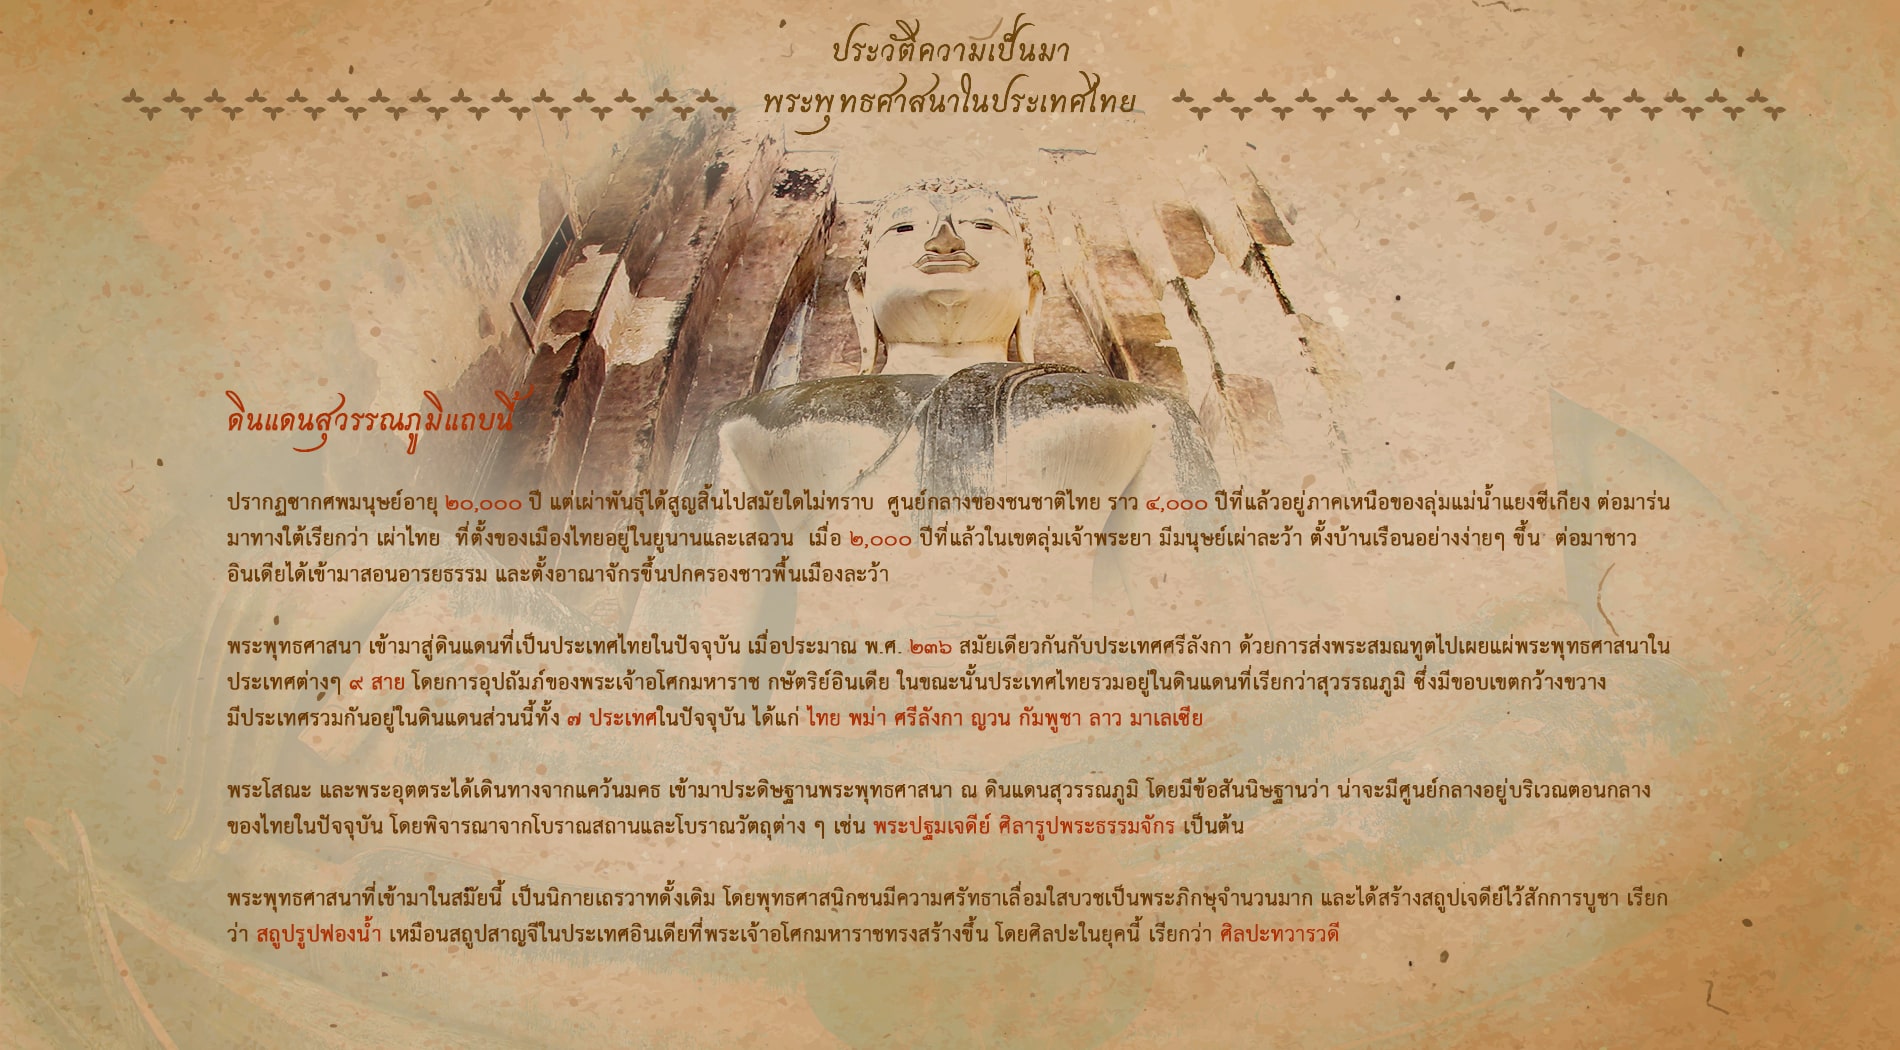 ประวัติความเป็นมา พระพุทธศาสนาในประเทศไทย ดินแดนสุวรรณภูมิ